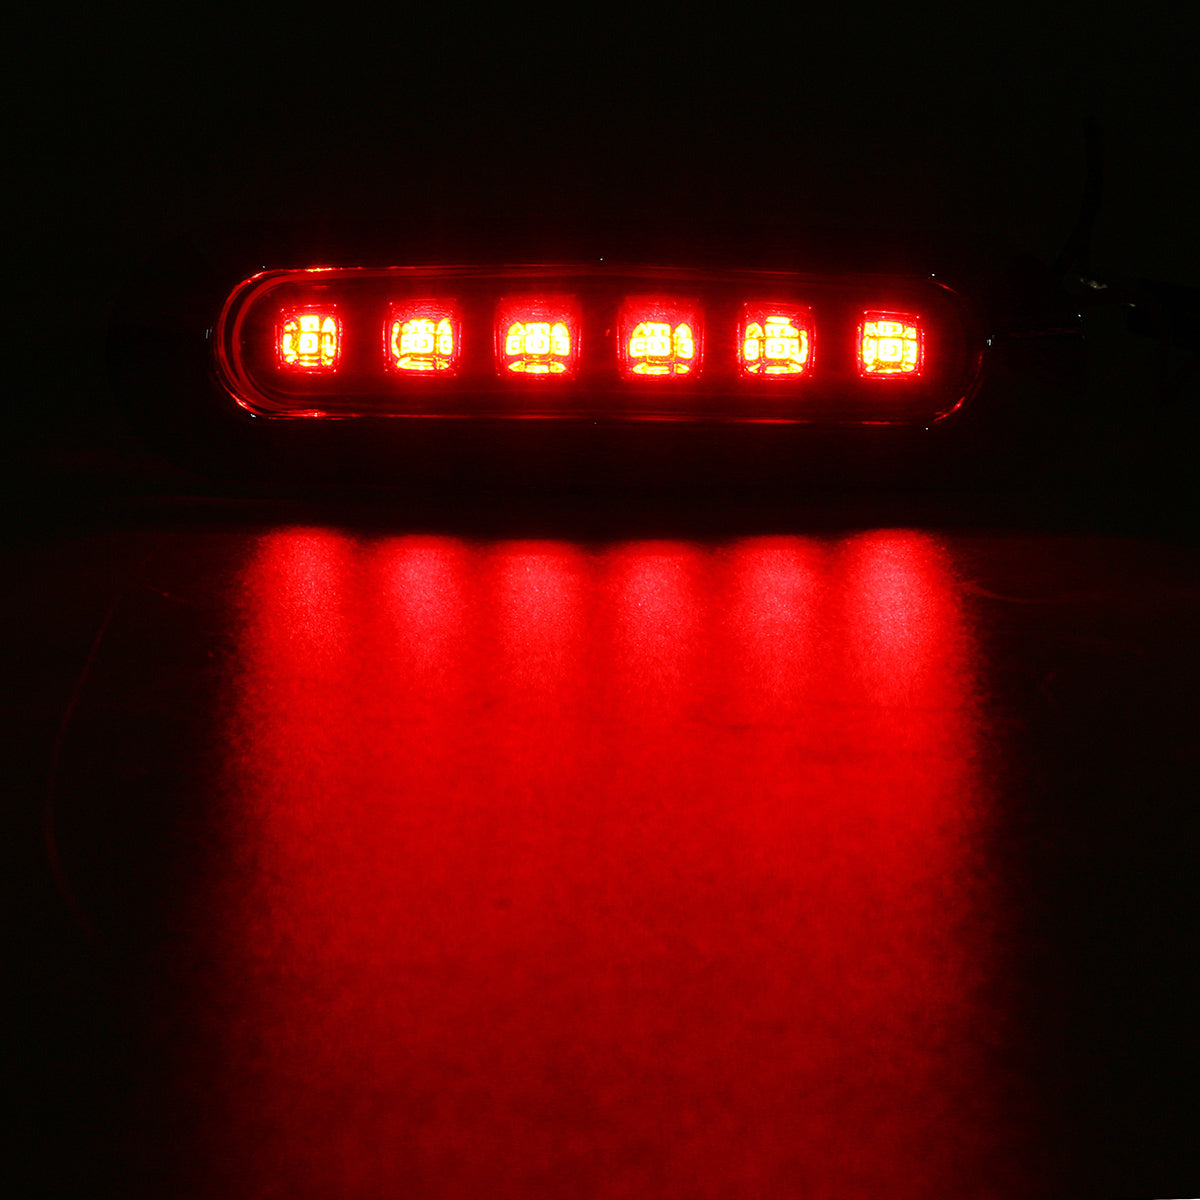 Red 12V/24V 6-LED Side Marker Strobe Light Lamp For Cars/Trucks/Trailers